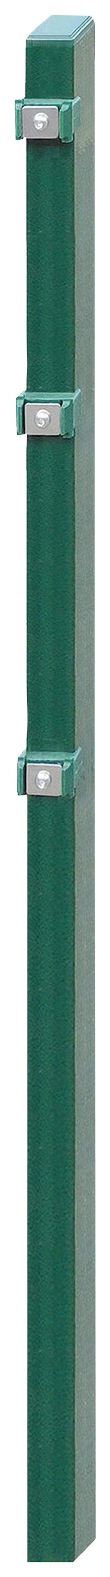 Arvotec Zaunpfosten »EXCLUSIVE 80«, 6x4x140 cm für Mattenhöhe 80 cm, zum Einbetonieren